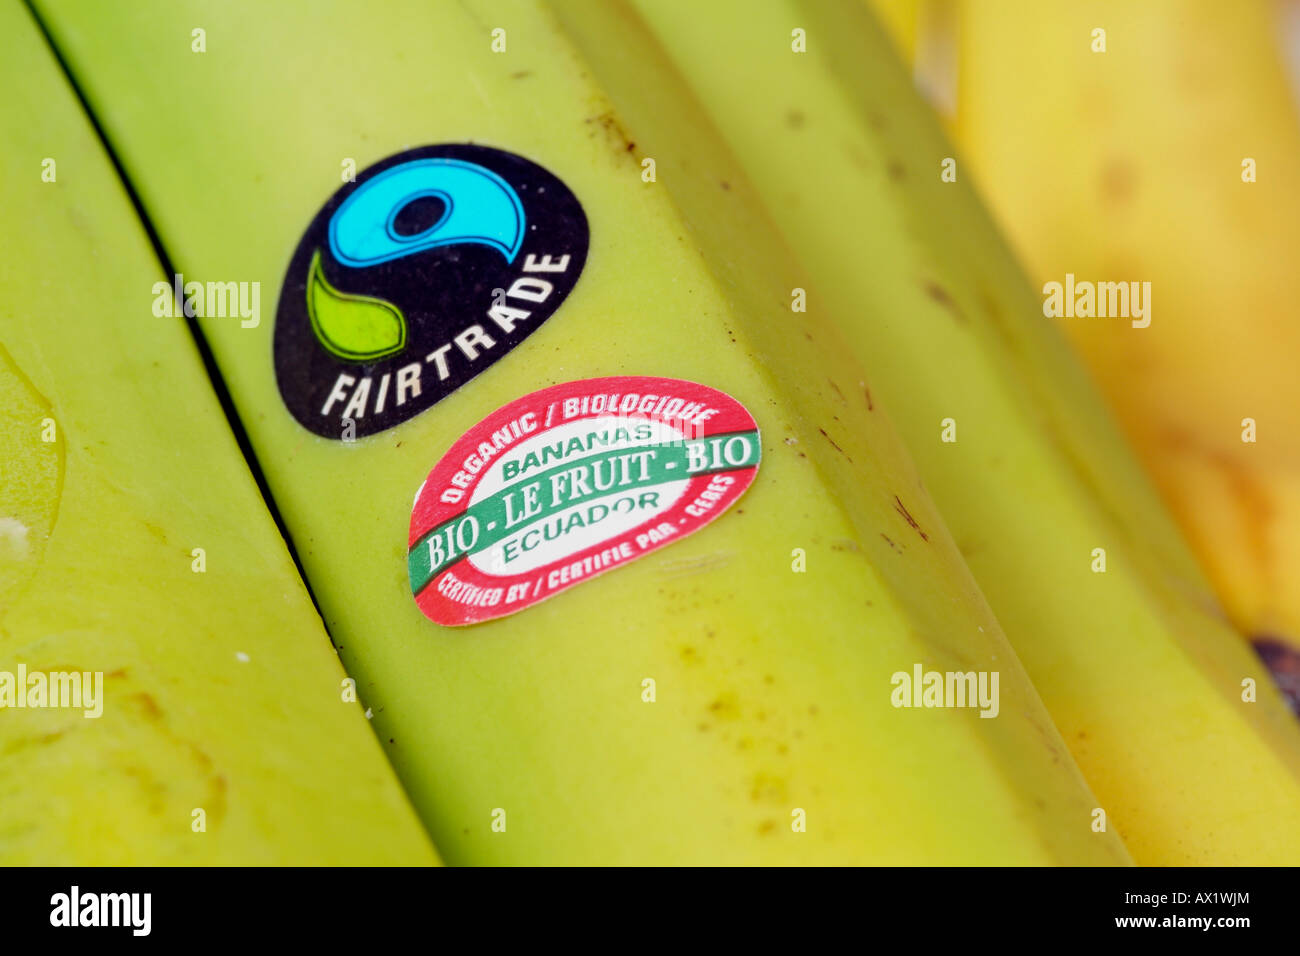 Fairtrade Banana with product sticker Fairtrade Banana Label Organic Bio  Ecuador Certification Stock Photo - Alamy